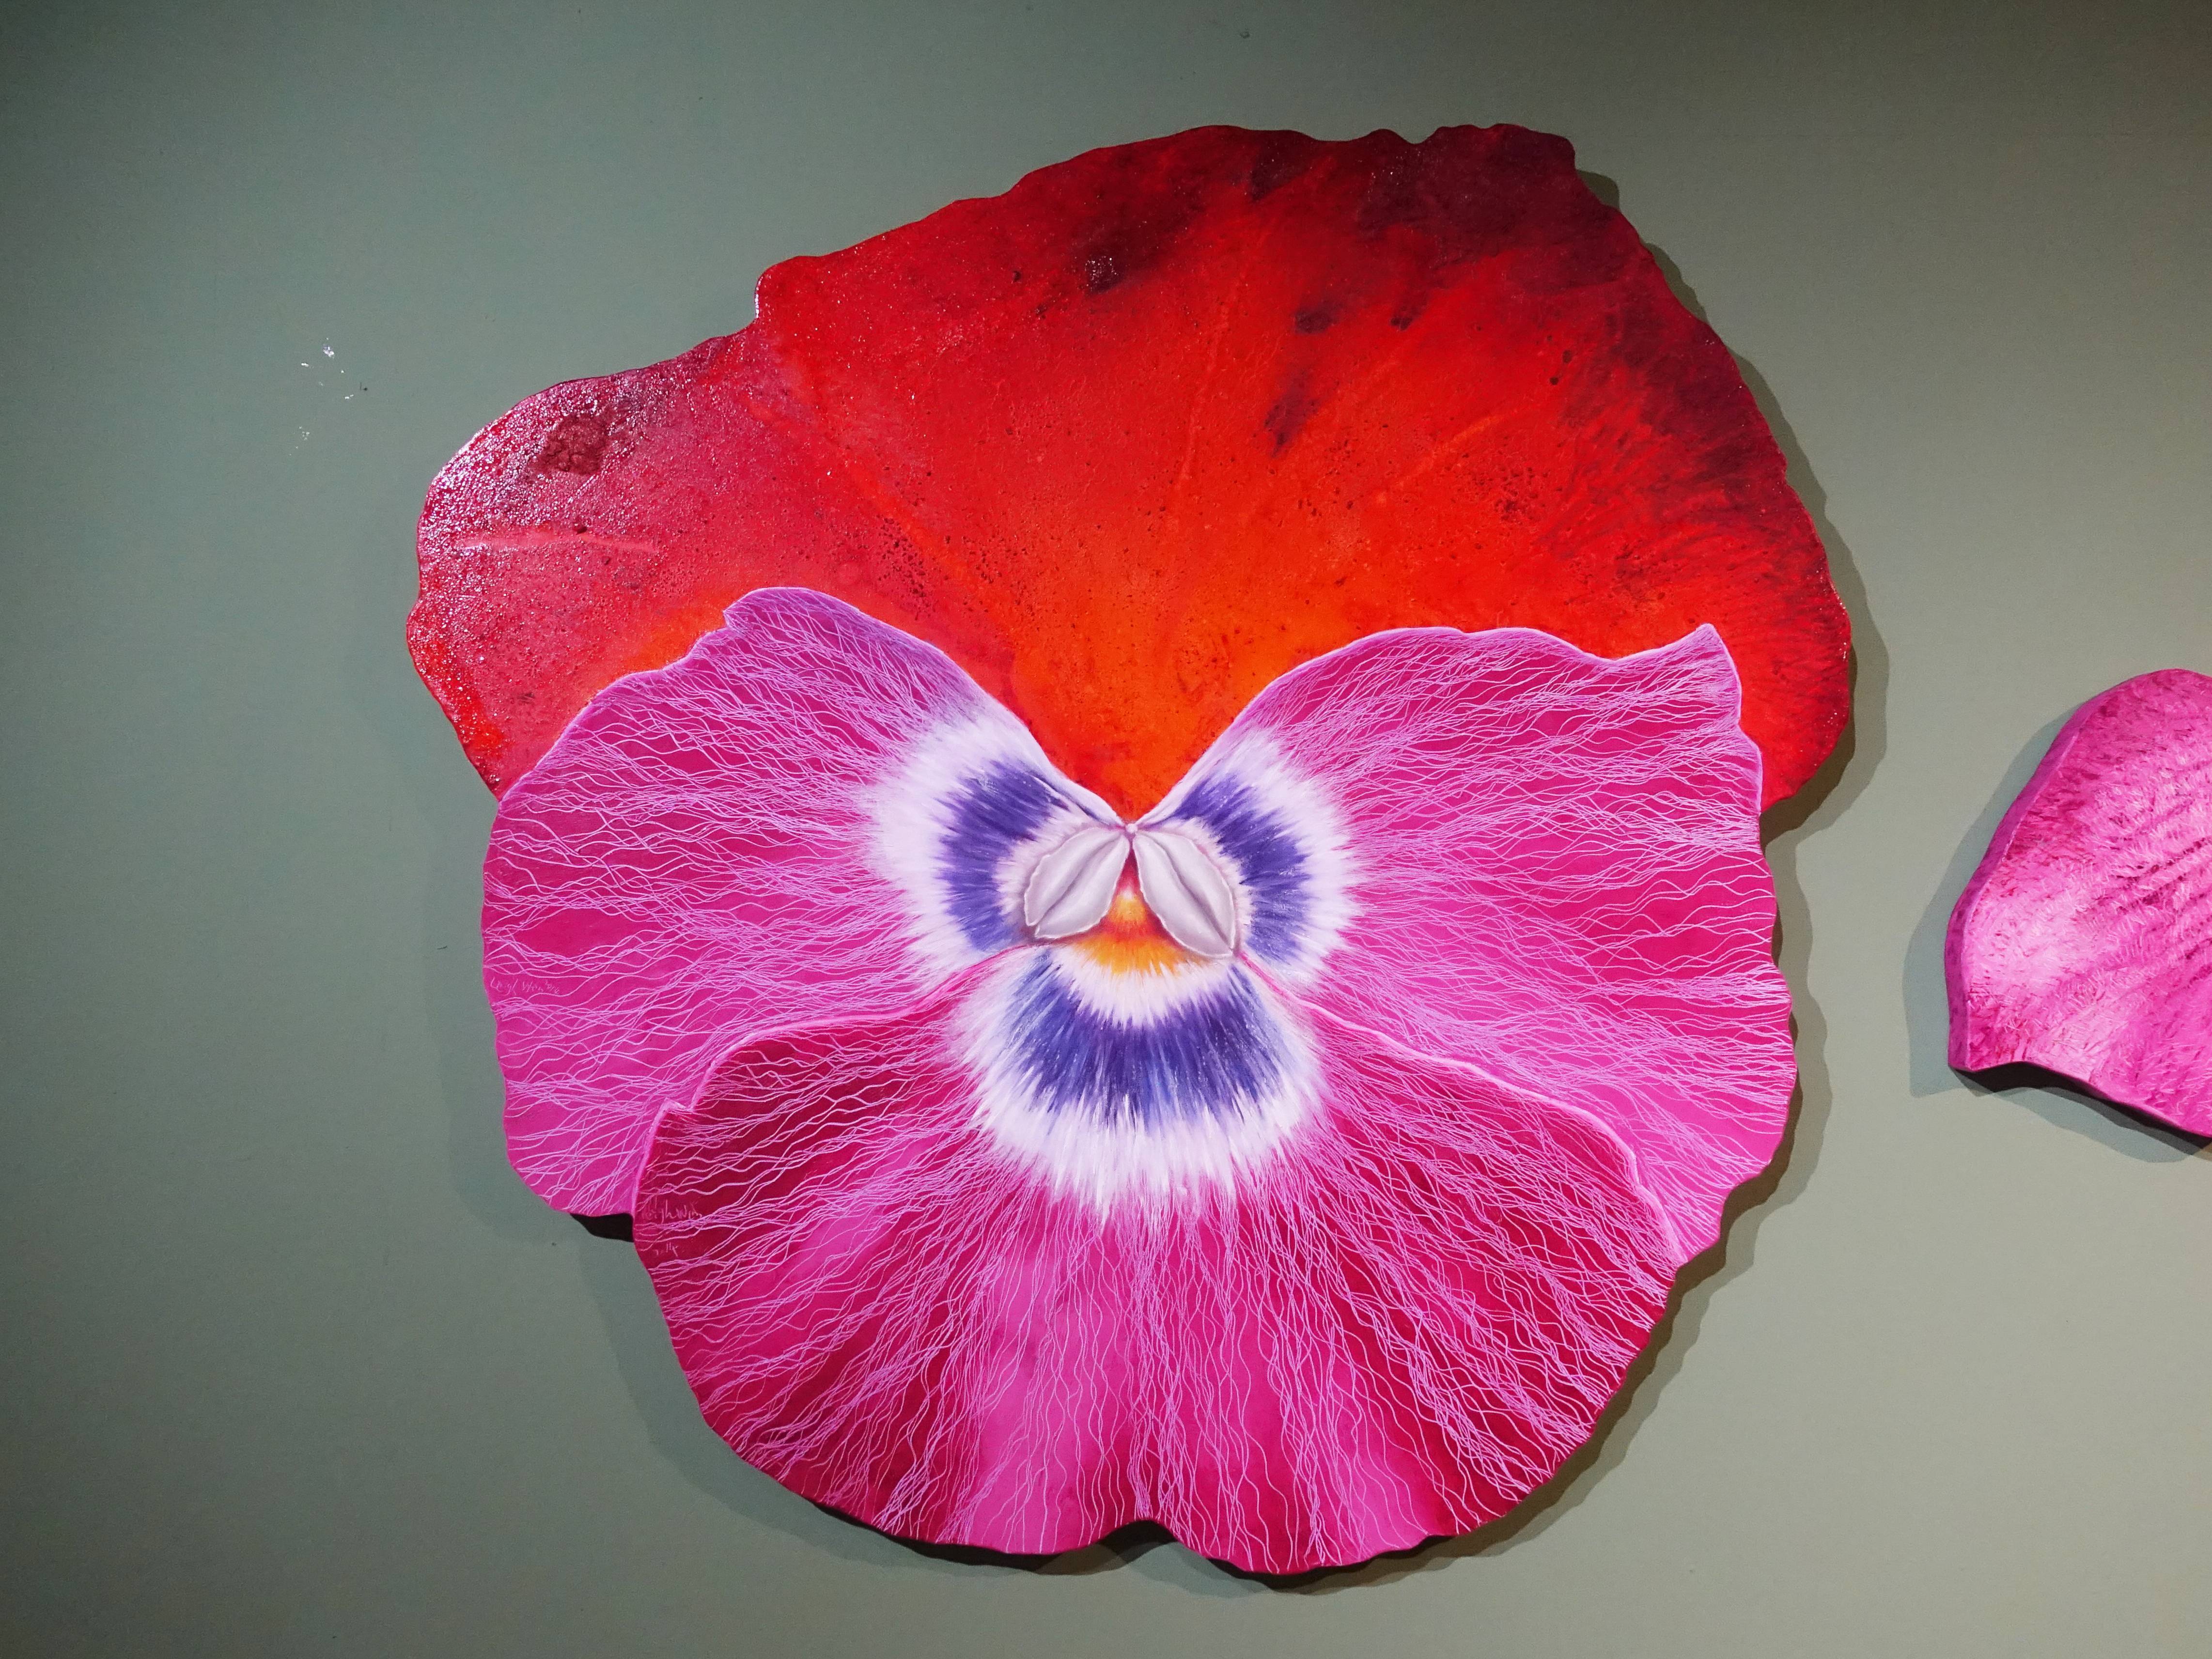 鄭麗雲，《三色堇II》，154.9 x 154.9 cm，油彩、蔴布，2014。